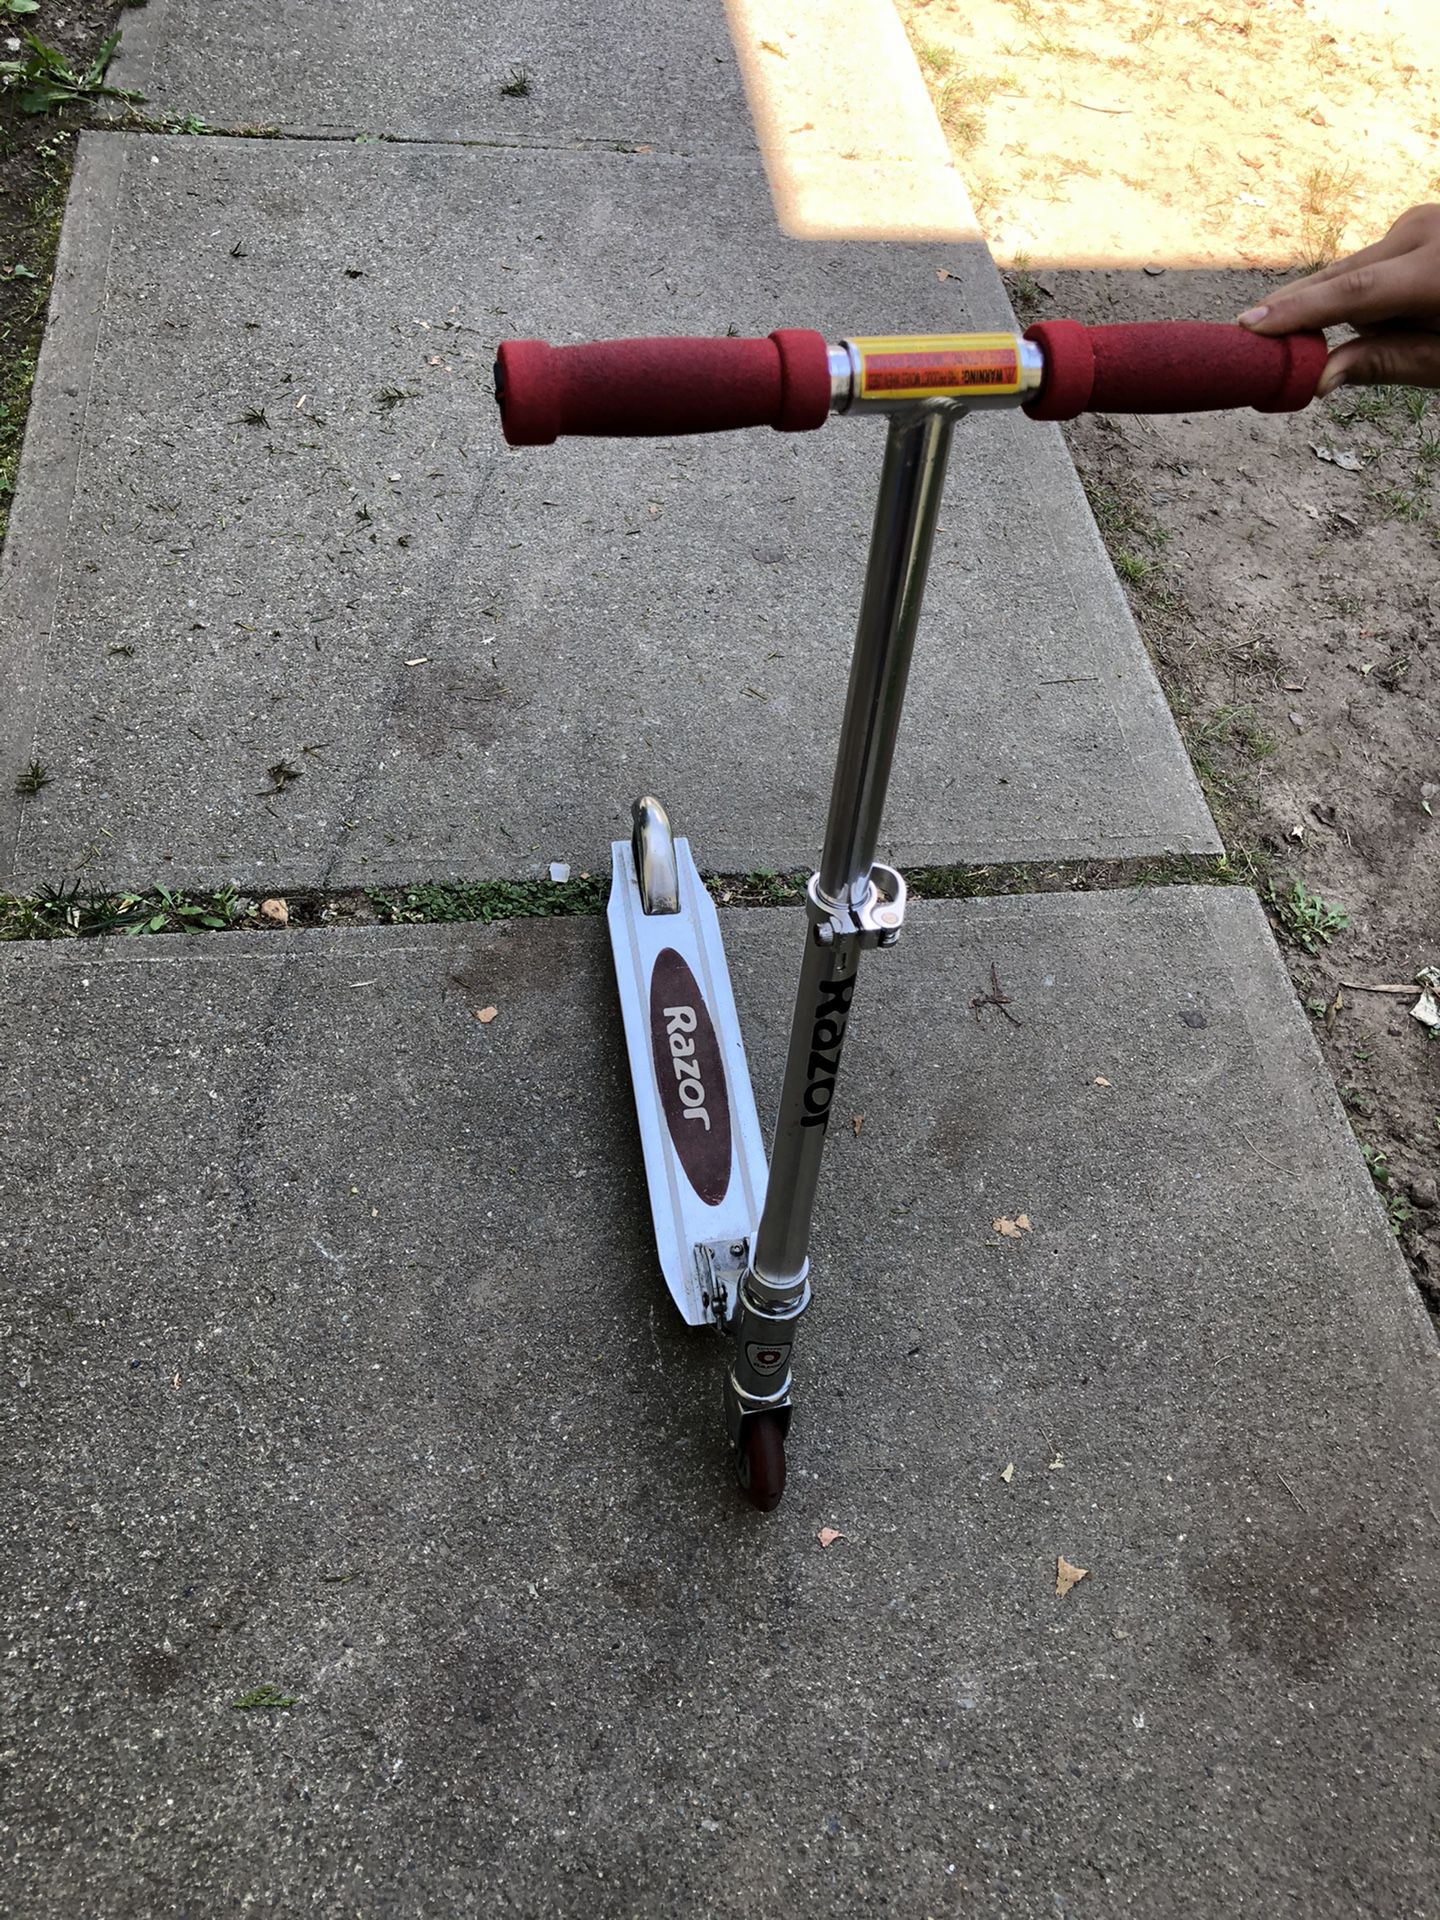 Razor scooter